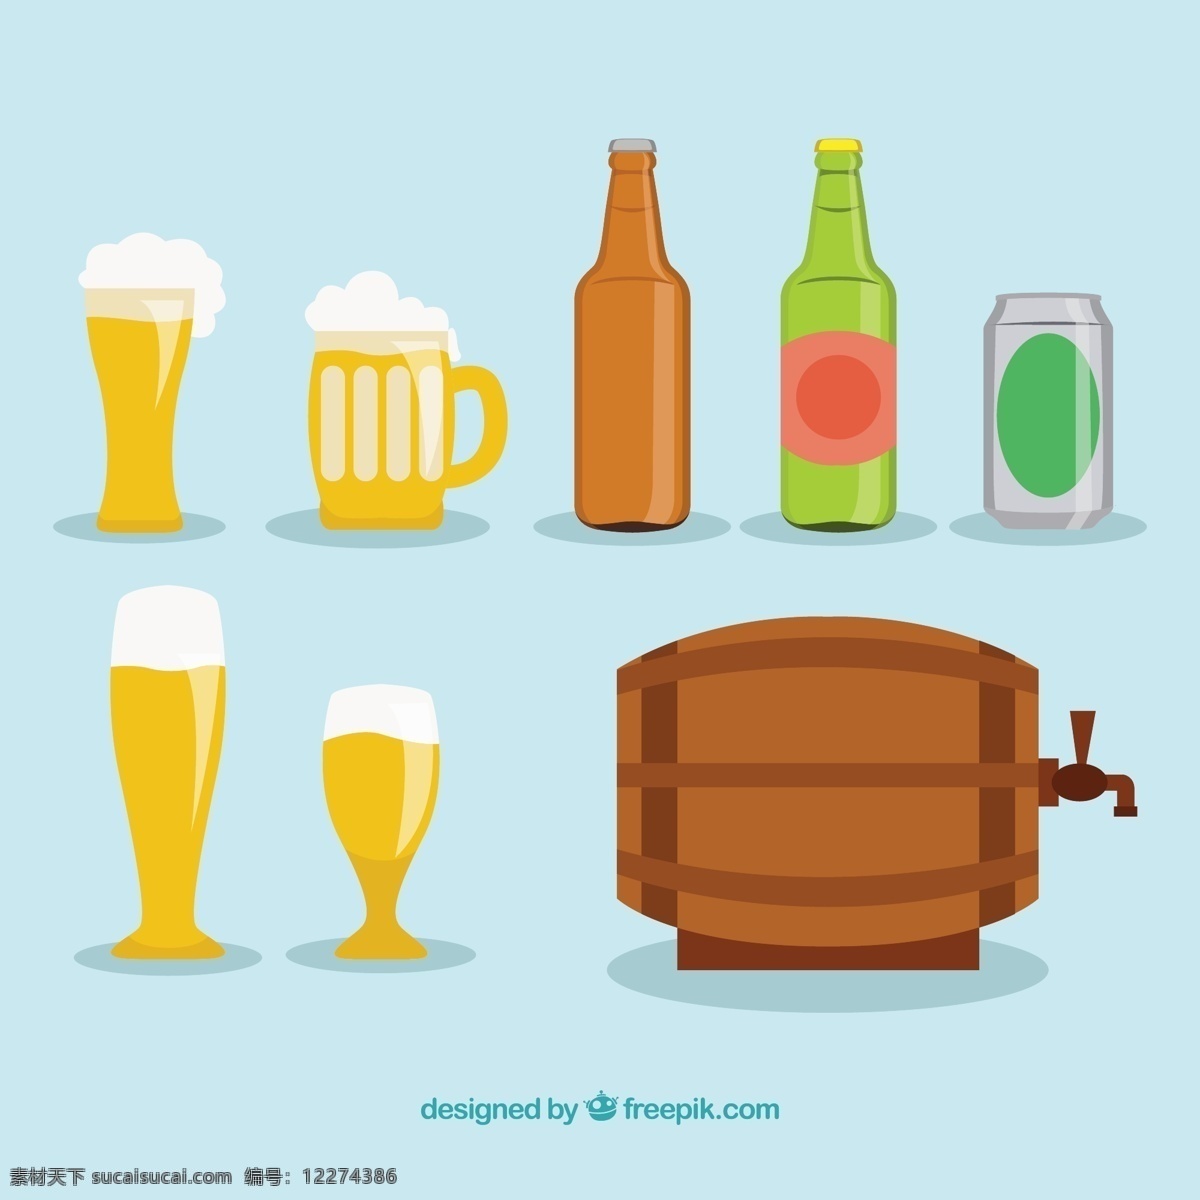 各种啤酒图标 啤酒 自然 图标 小麦 瓶 饮料 天然 杯 酒精 桶 酒精饮料 品种 青色 天蓝色